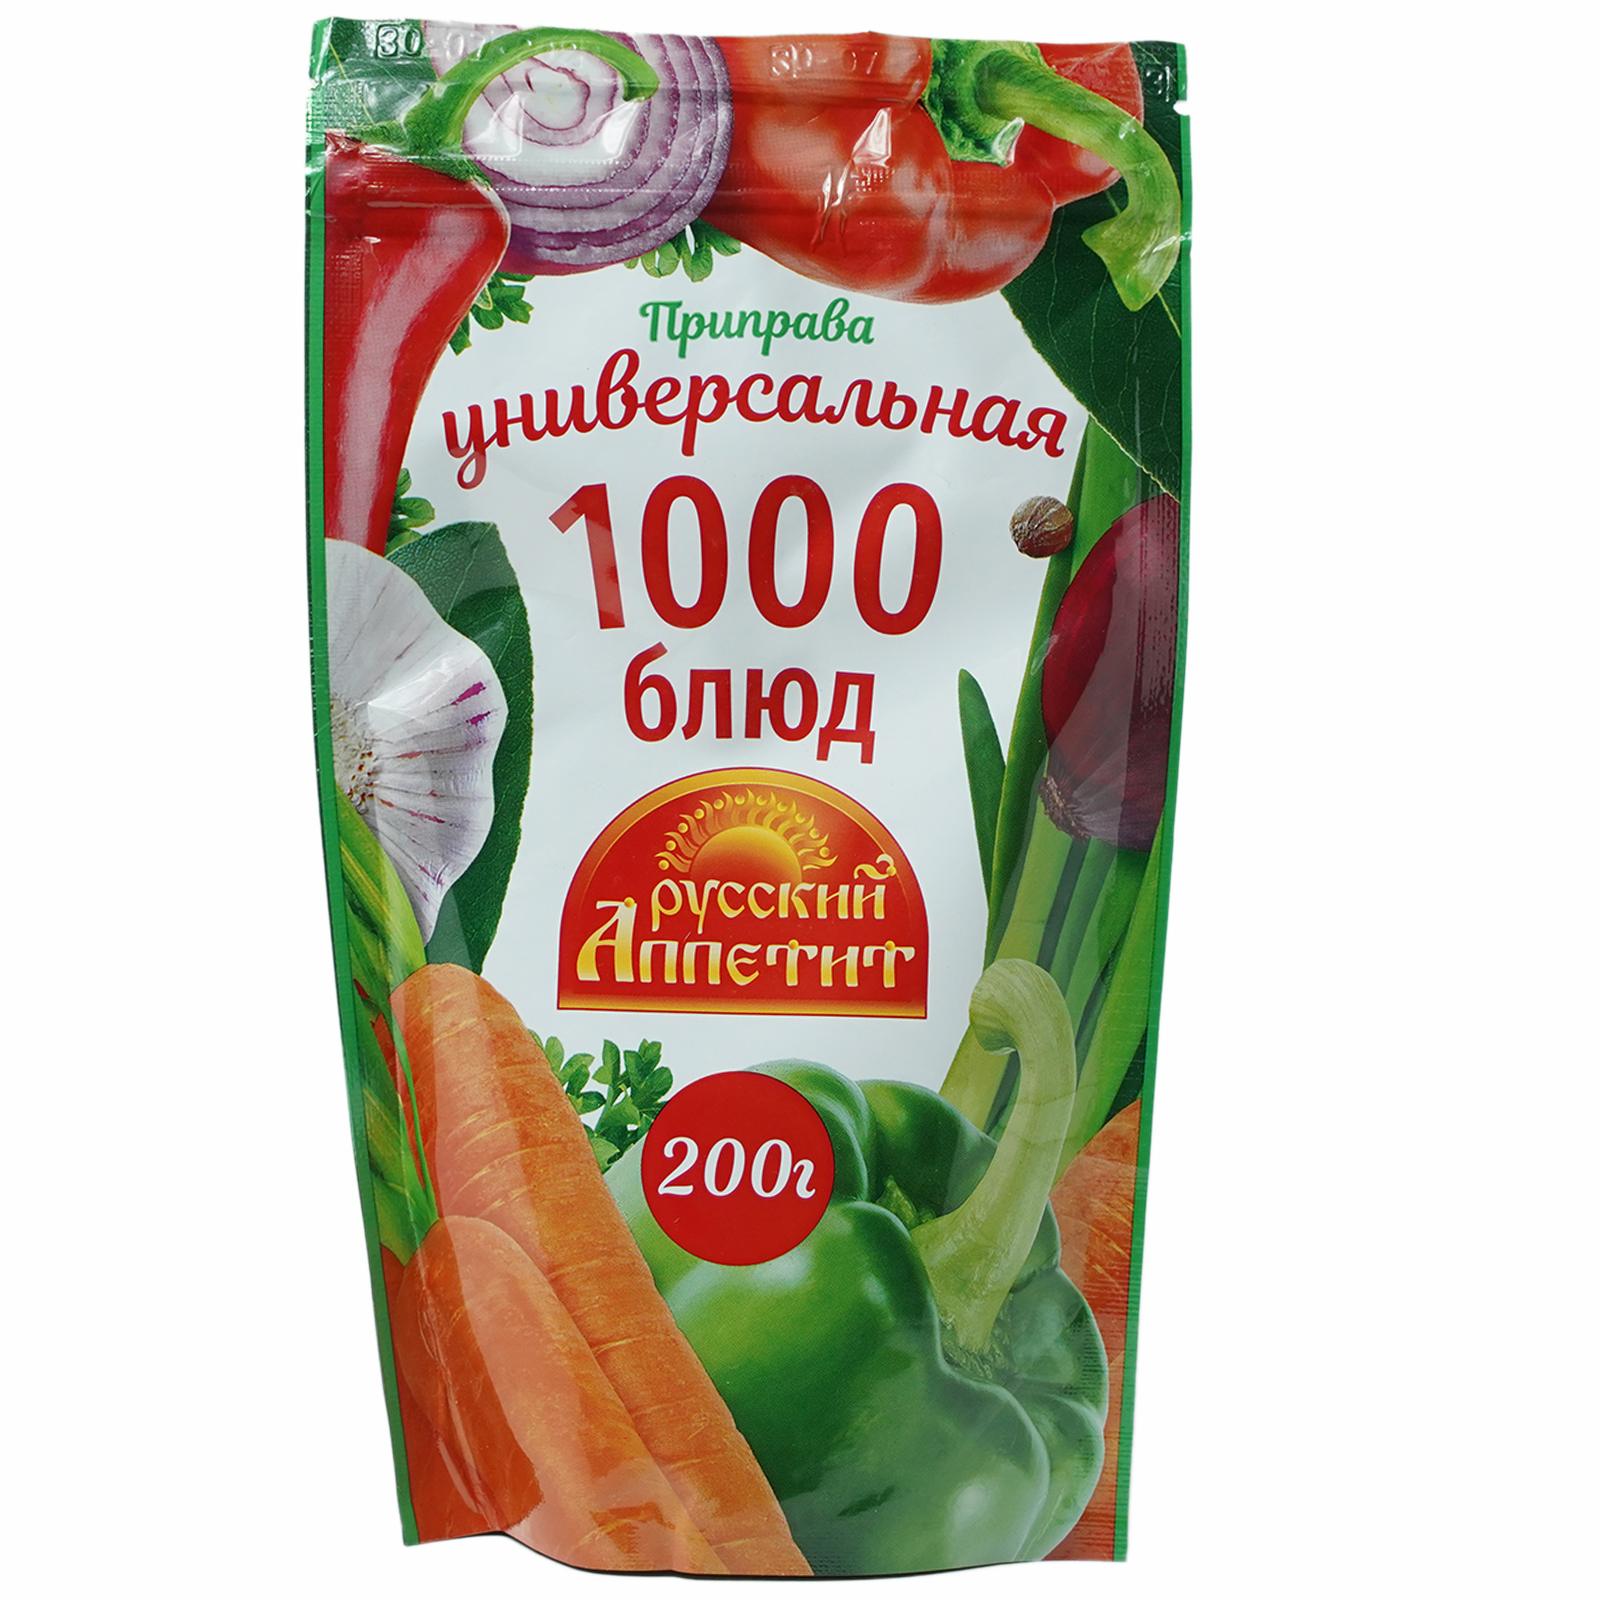 Приправа Русский аппетит Универсальная 1000 блюд 200 г